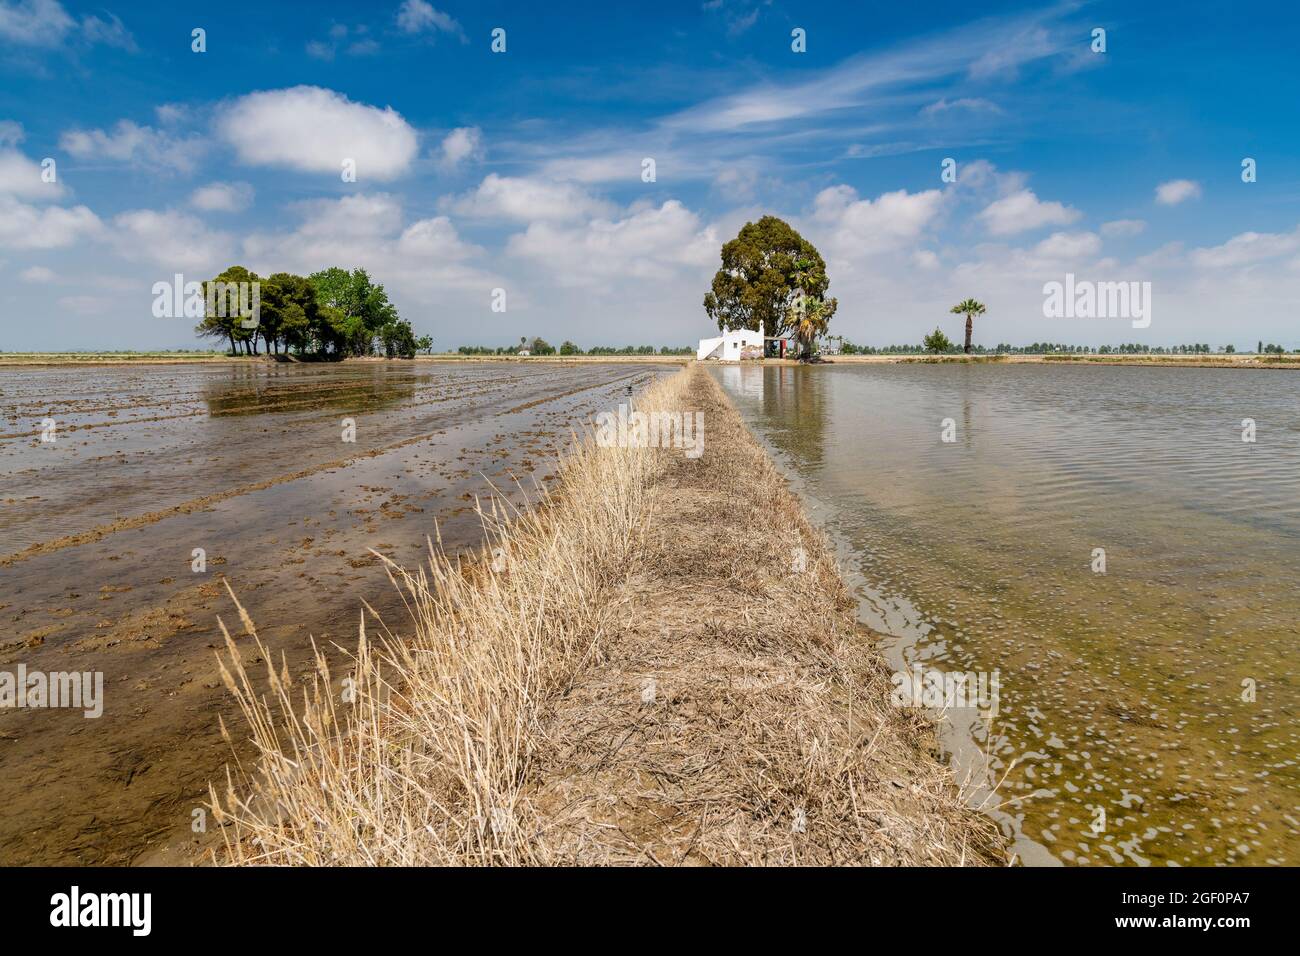 Rice fields, Delta de l'Ebre, River Ebro, Catalonia, Spain Stock Photo